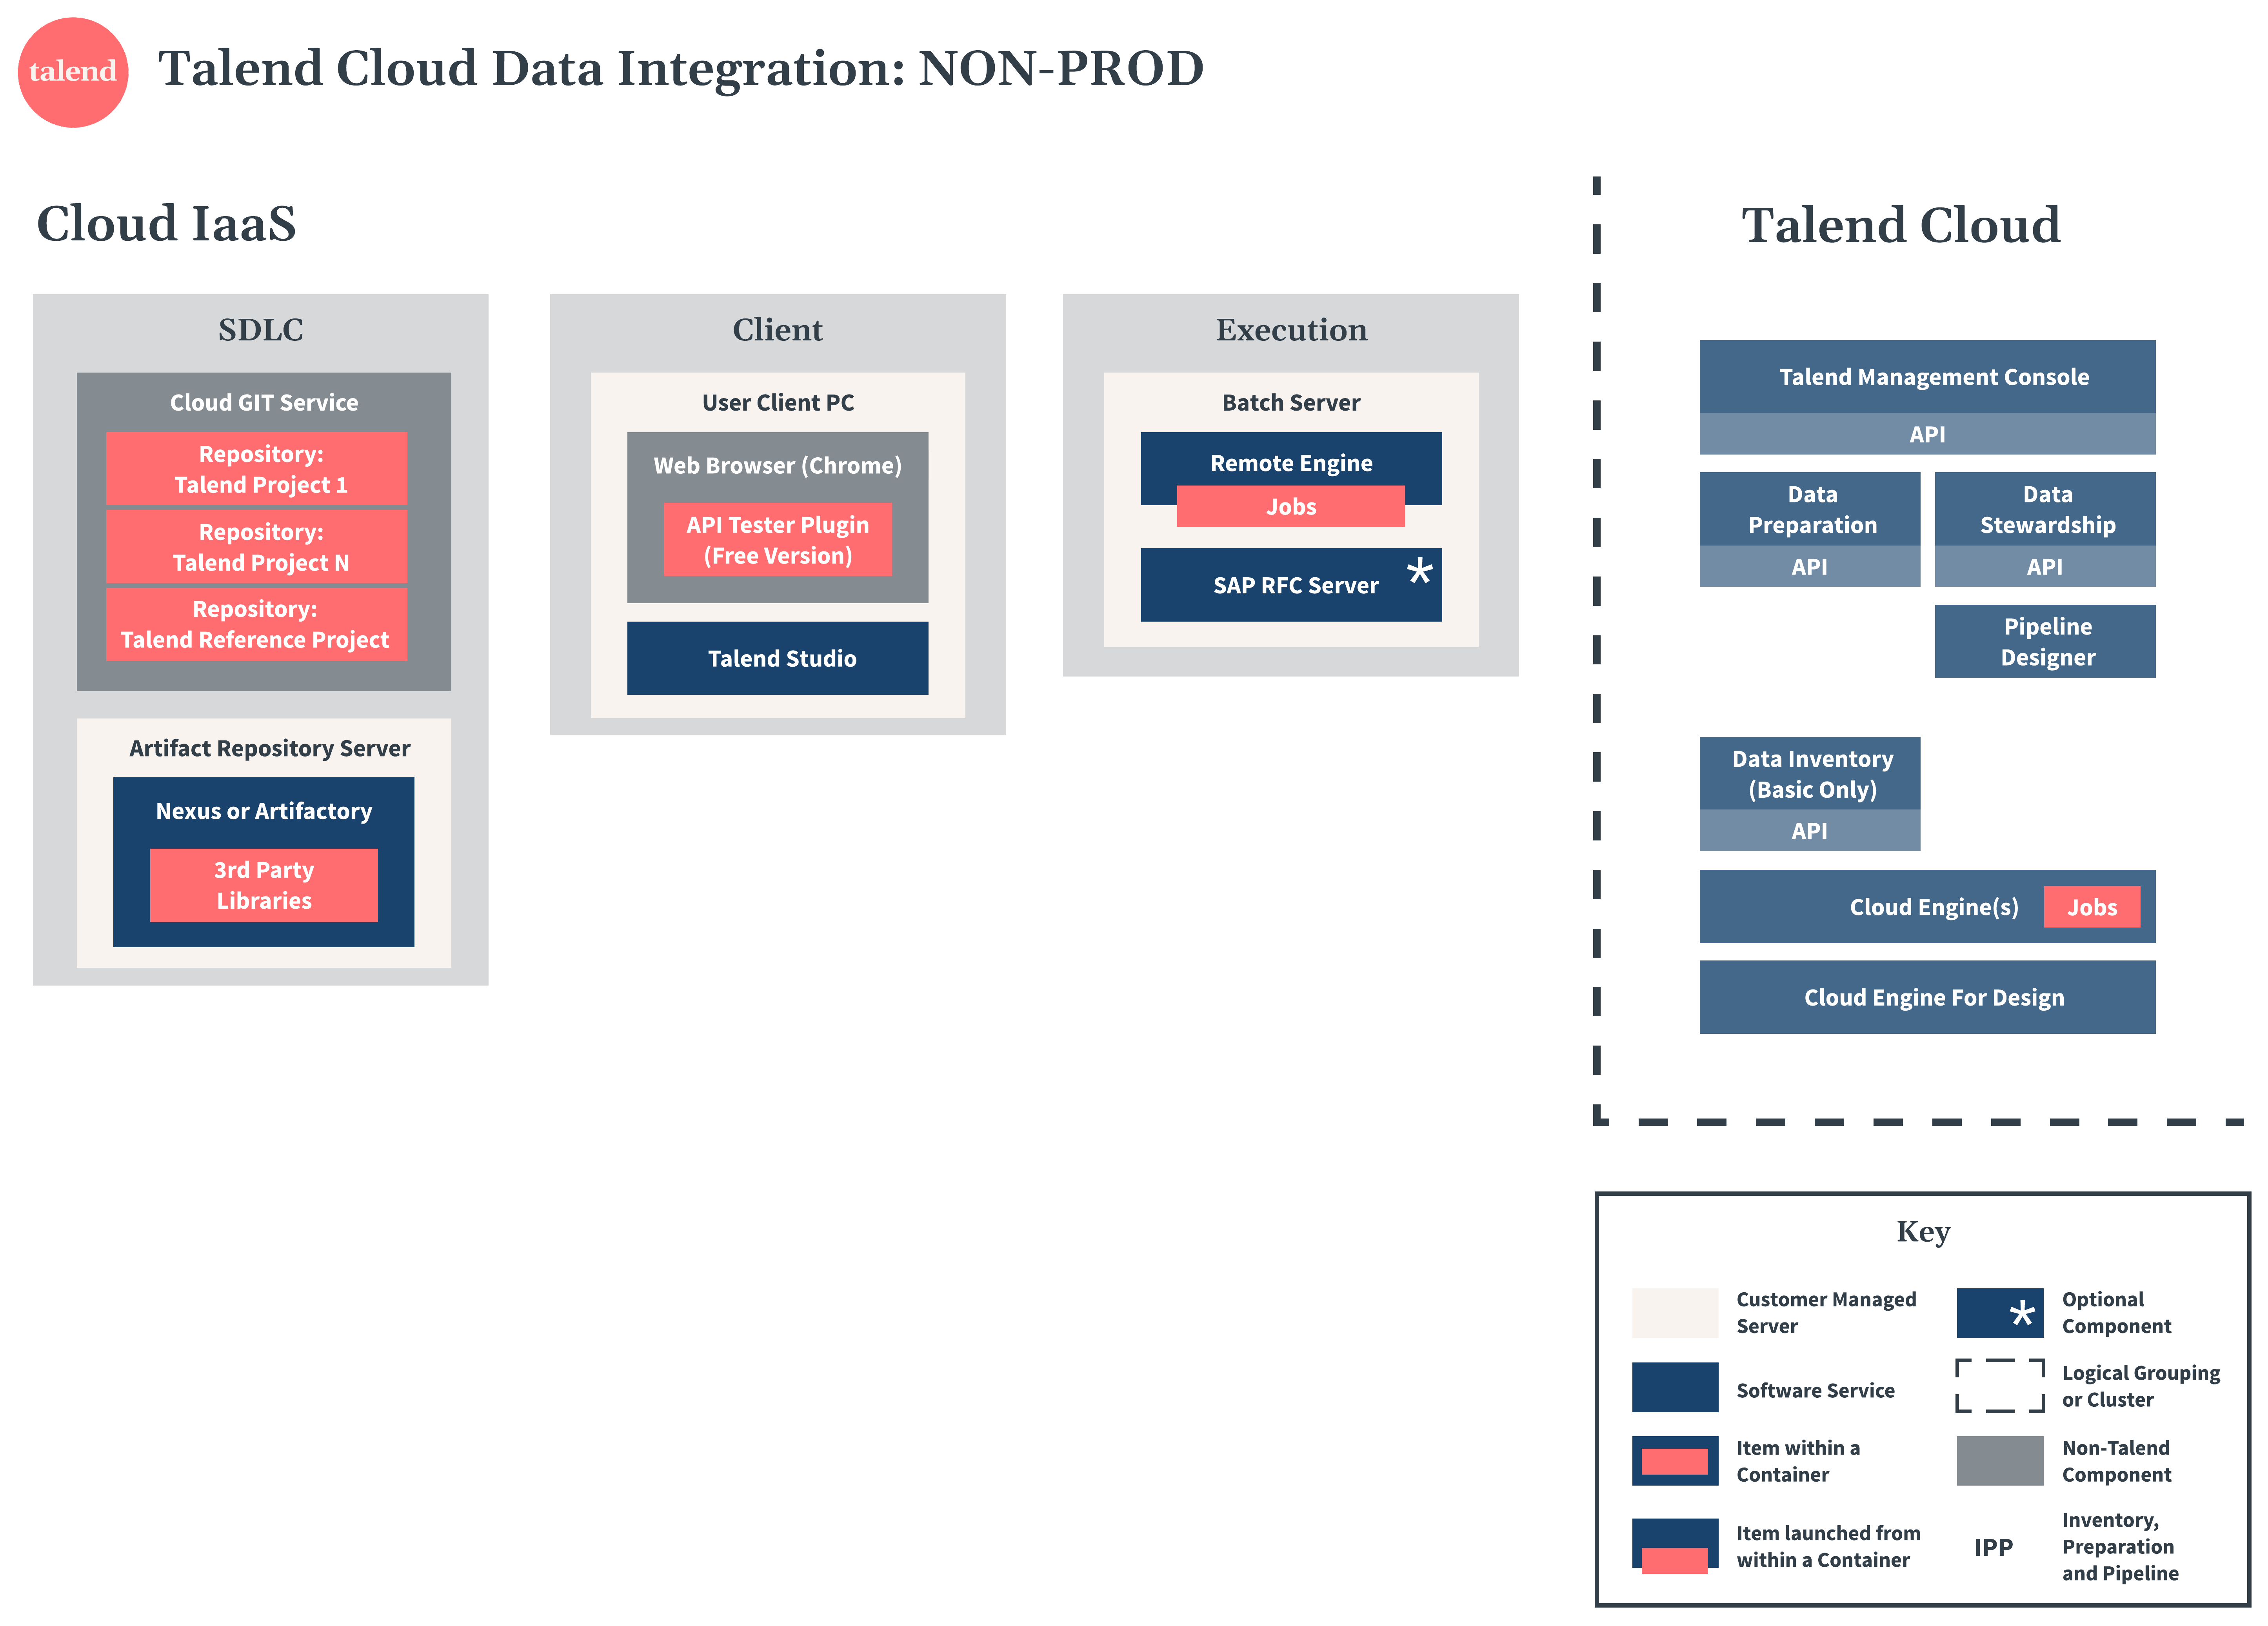 Talend Cloud Data Integration Diagramm zu Nicht-Produktion.